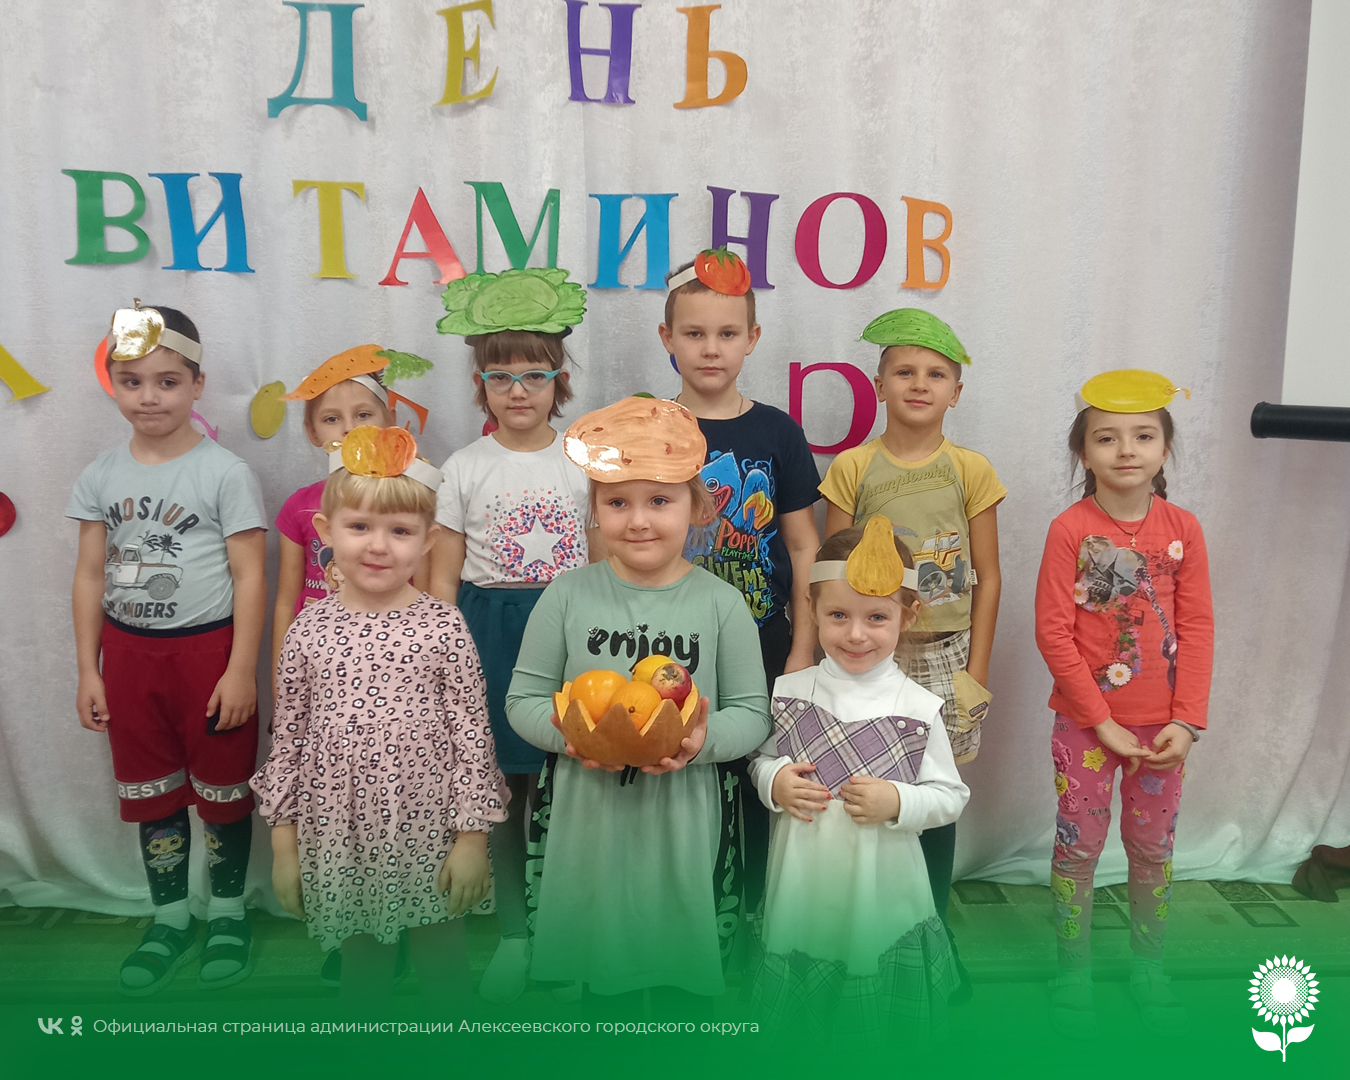 В детских садах Алексеевского городского округа прошел «День витаминов»